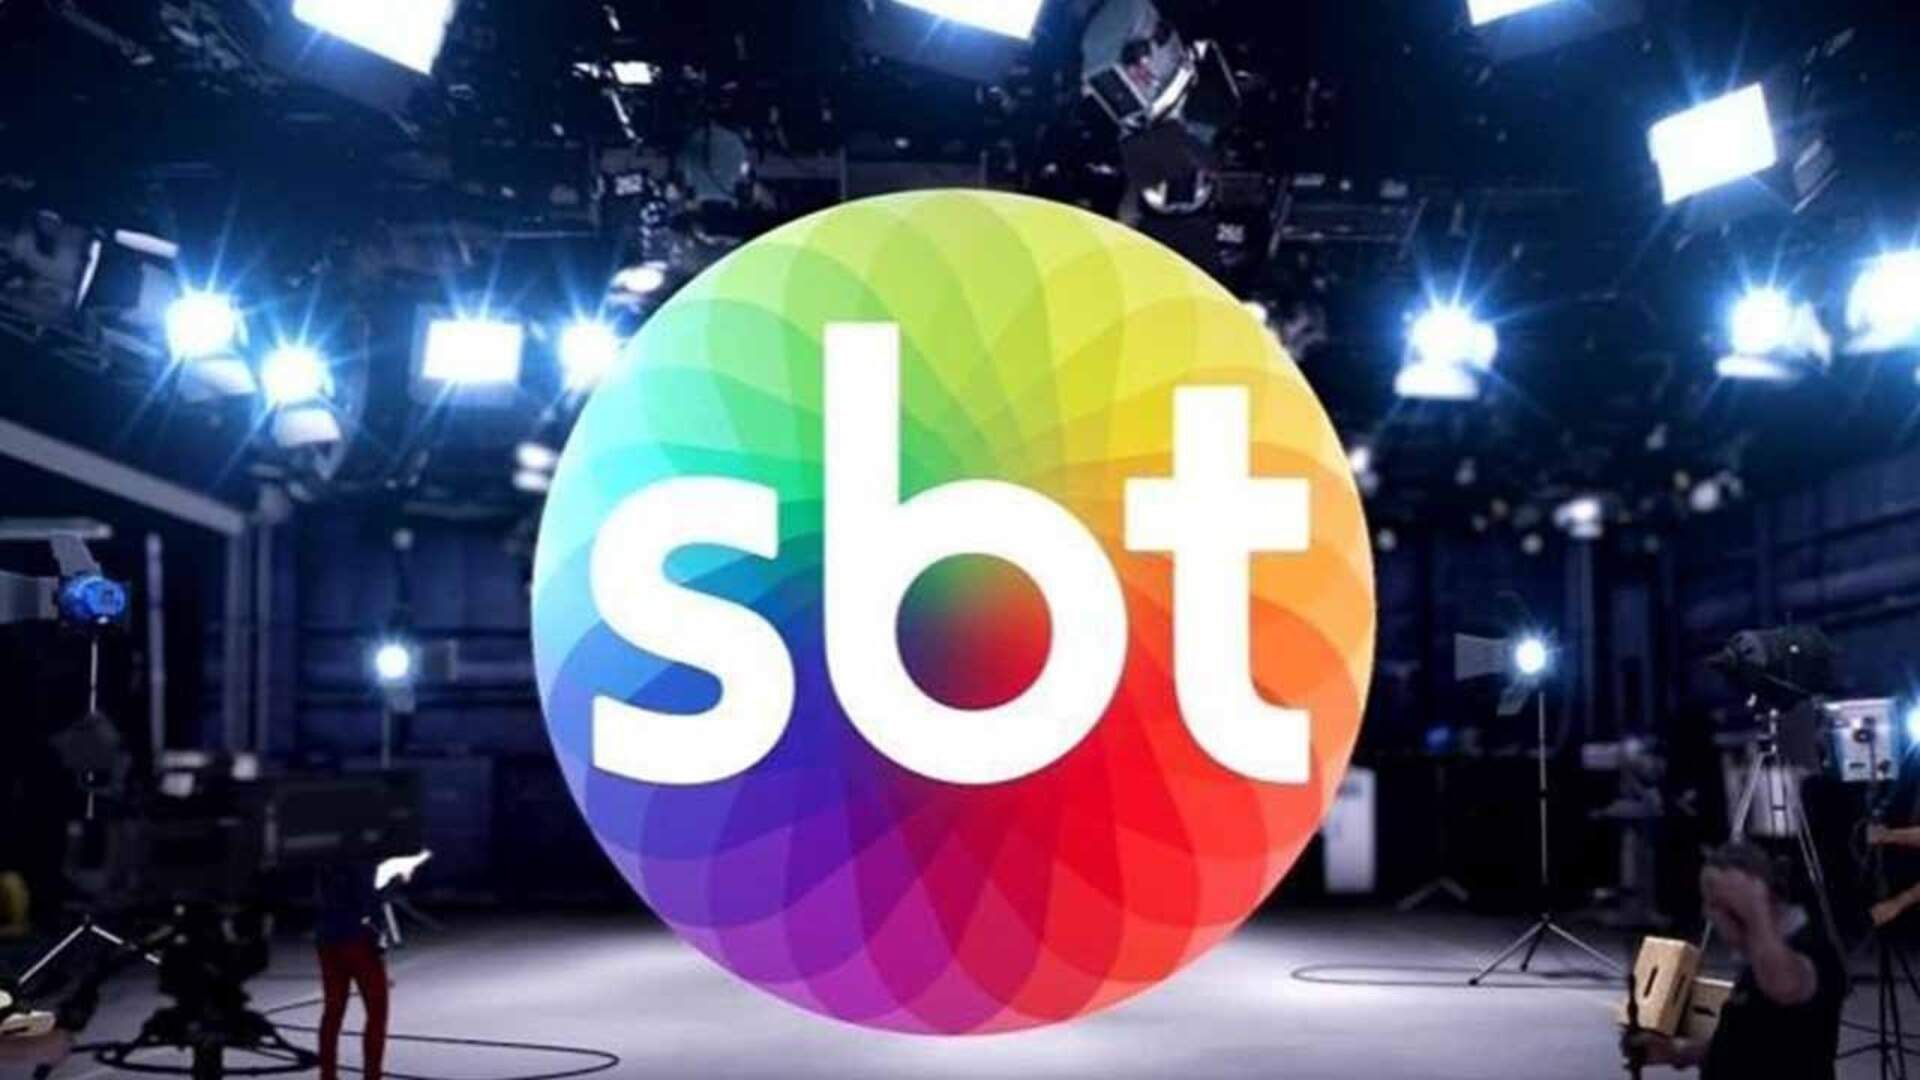 Polêmica: SBT toma decisão radical, adia Teleton e motivo causa comoção nos bastidores